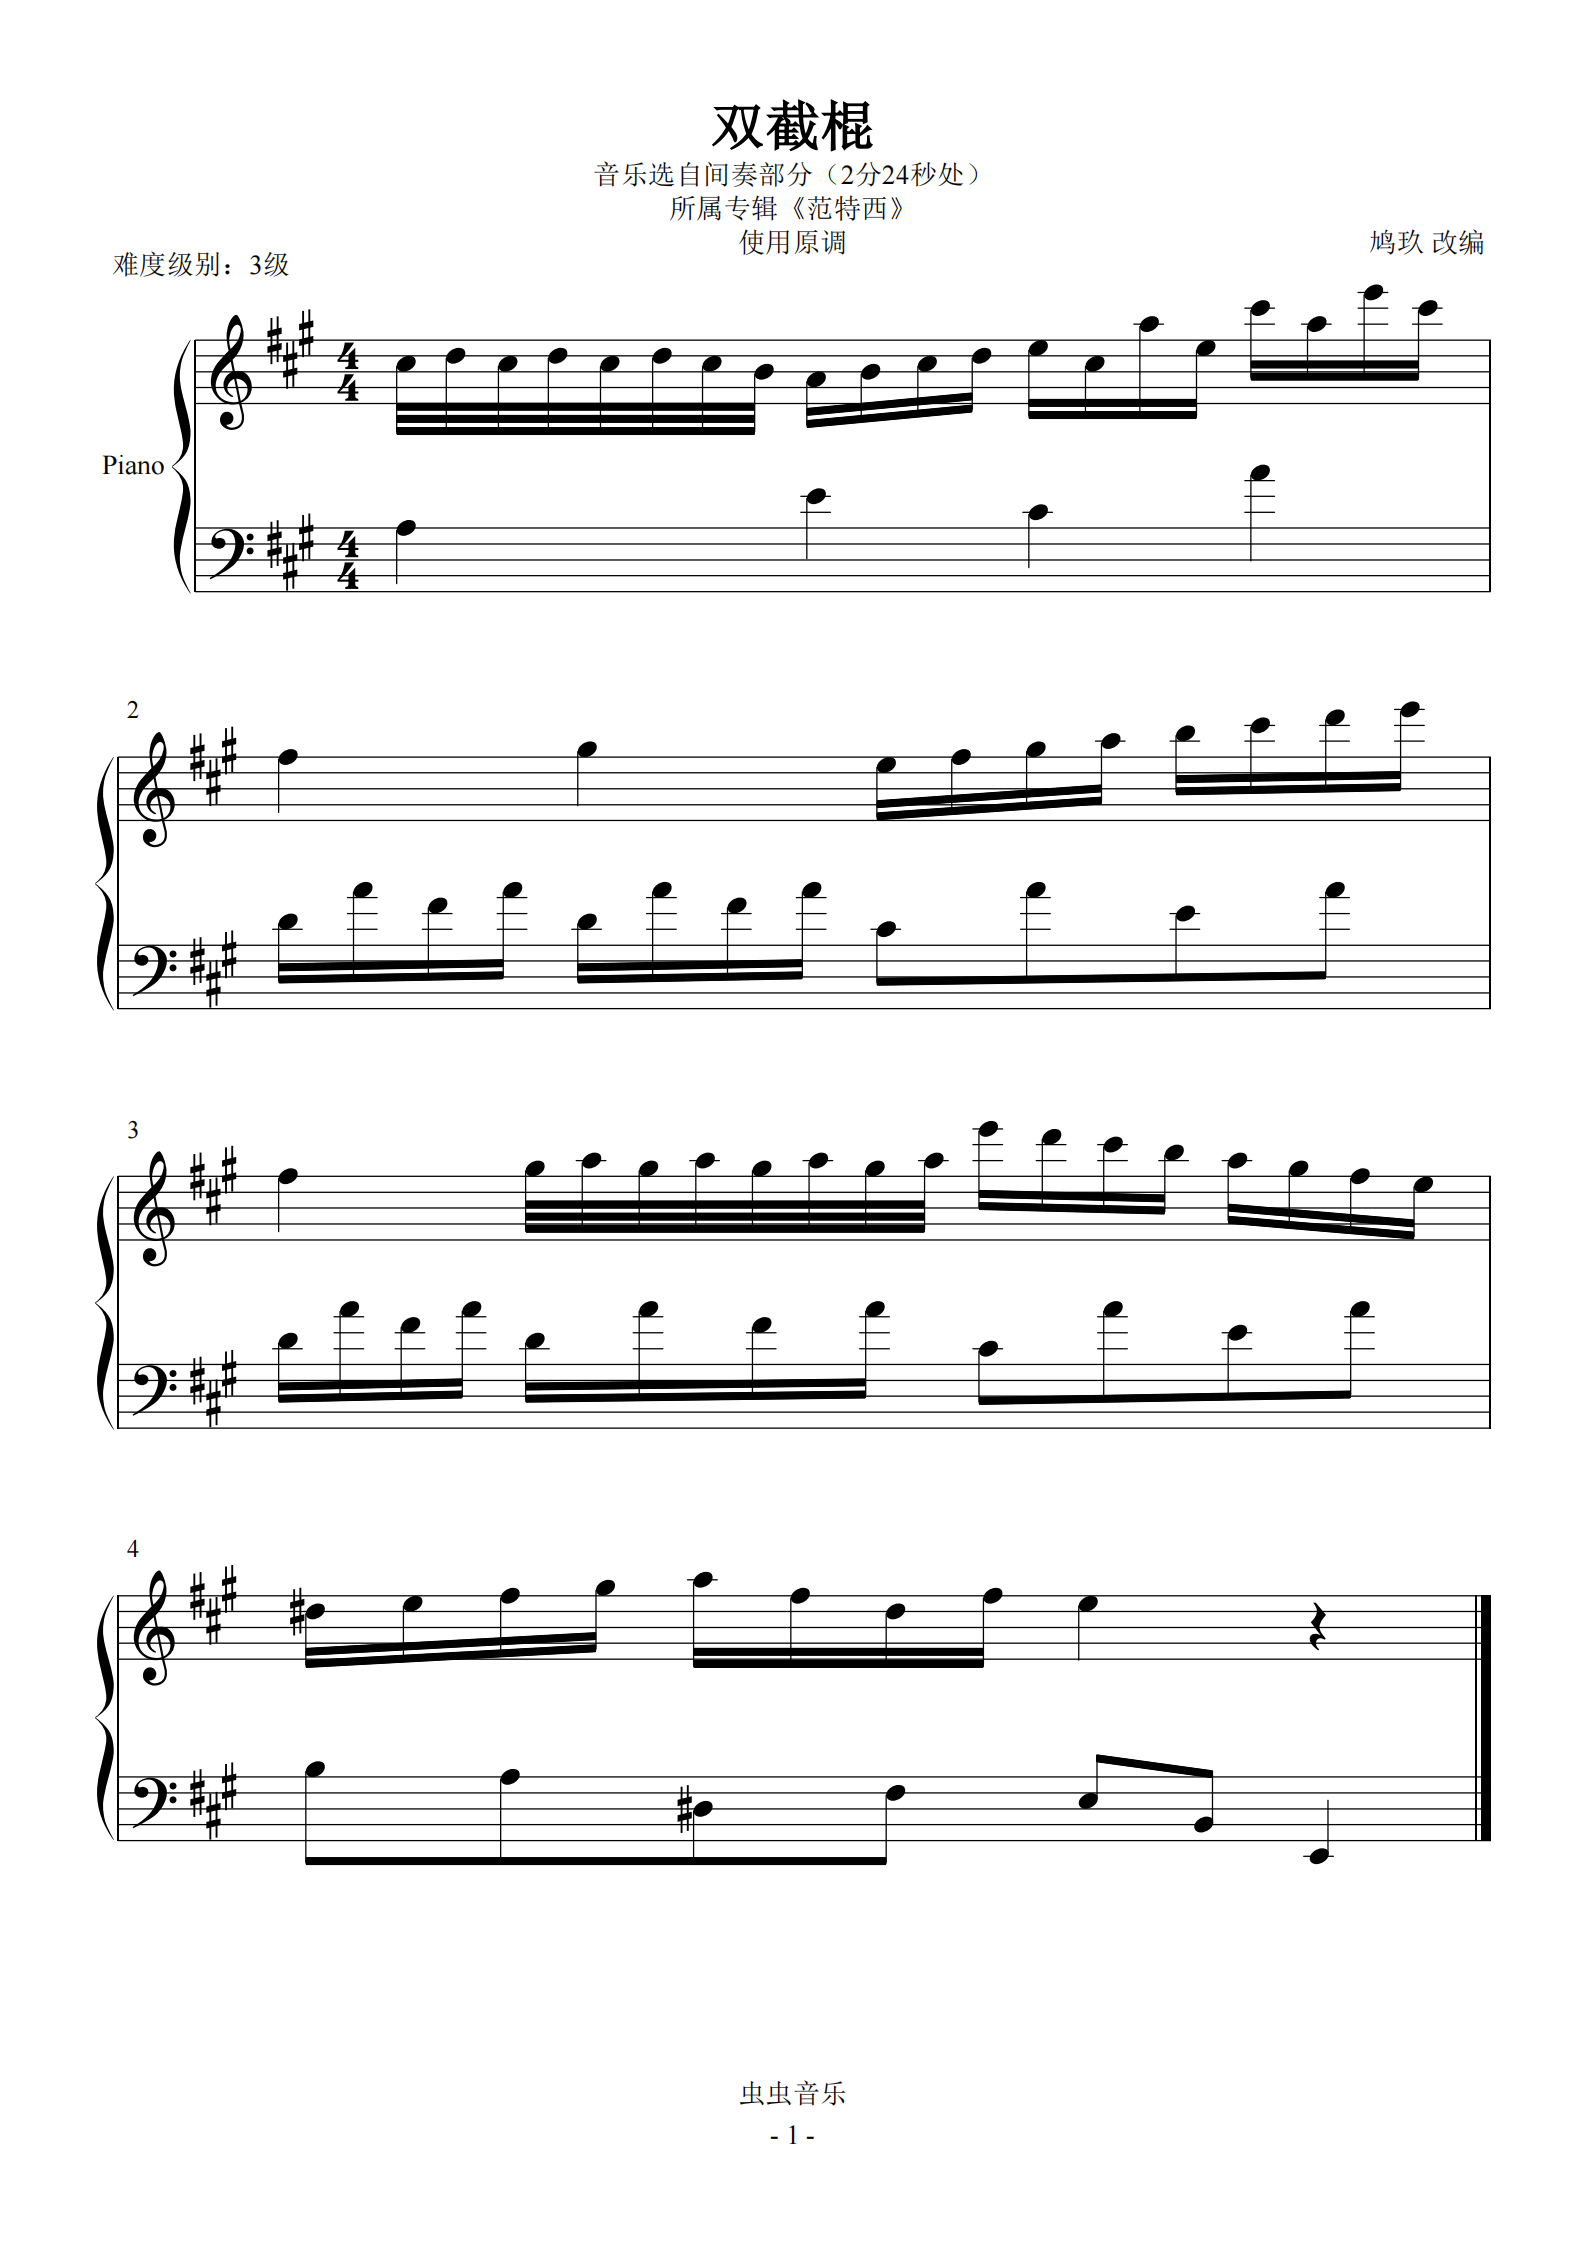 《双截棍》吉他谱扫弦节奏型弹唱练习 - C调和弦谱(弹唱谱) - 扫弦版曲谱 - 易谱库